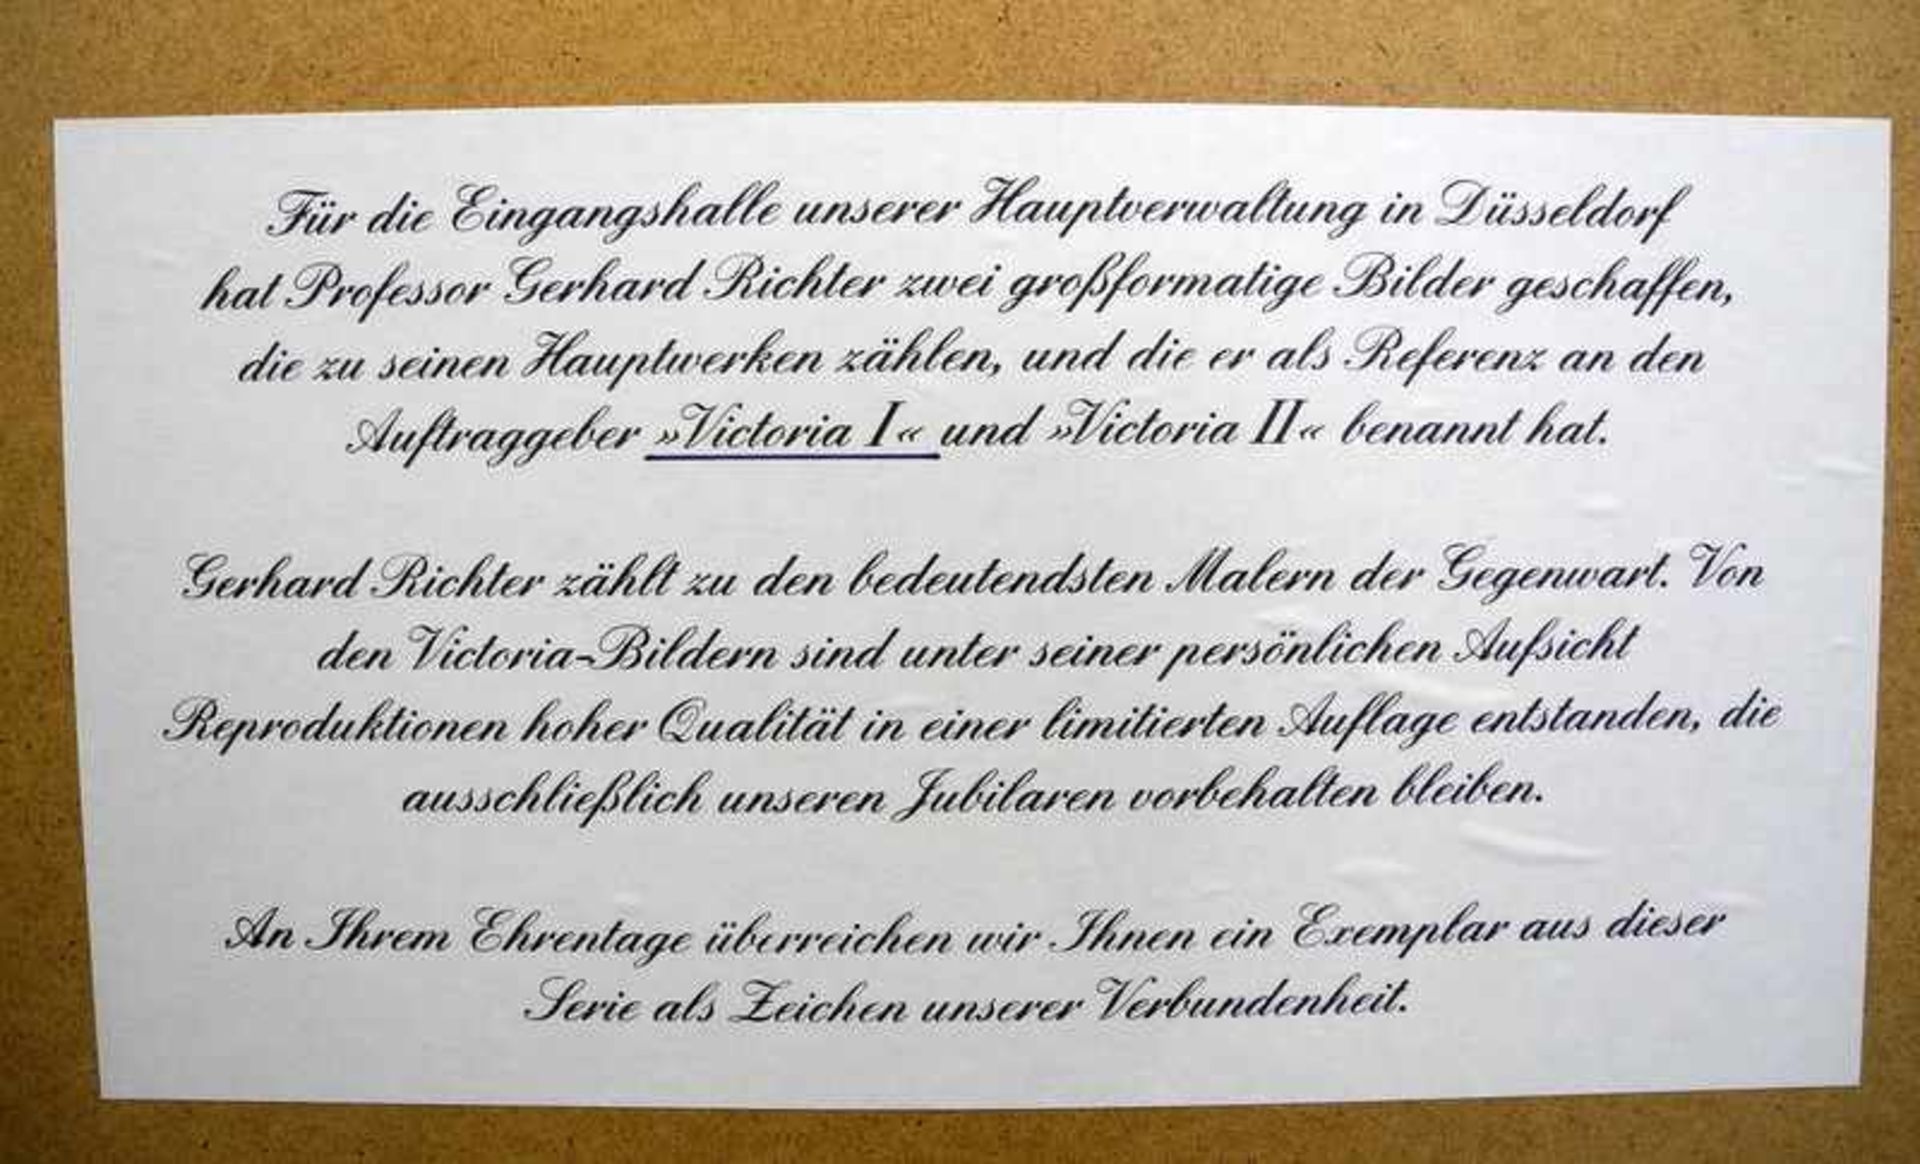 Gerhard Richter, geb. 1932 DresdenFarboffsetdruck/Karton. Limitierte Reproduktion des - Bild 5 aus 5